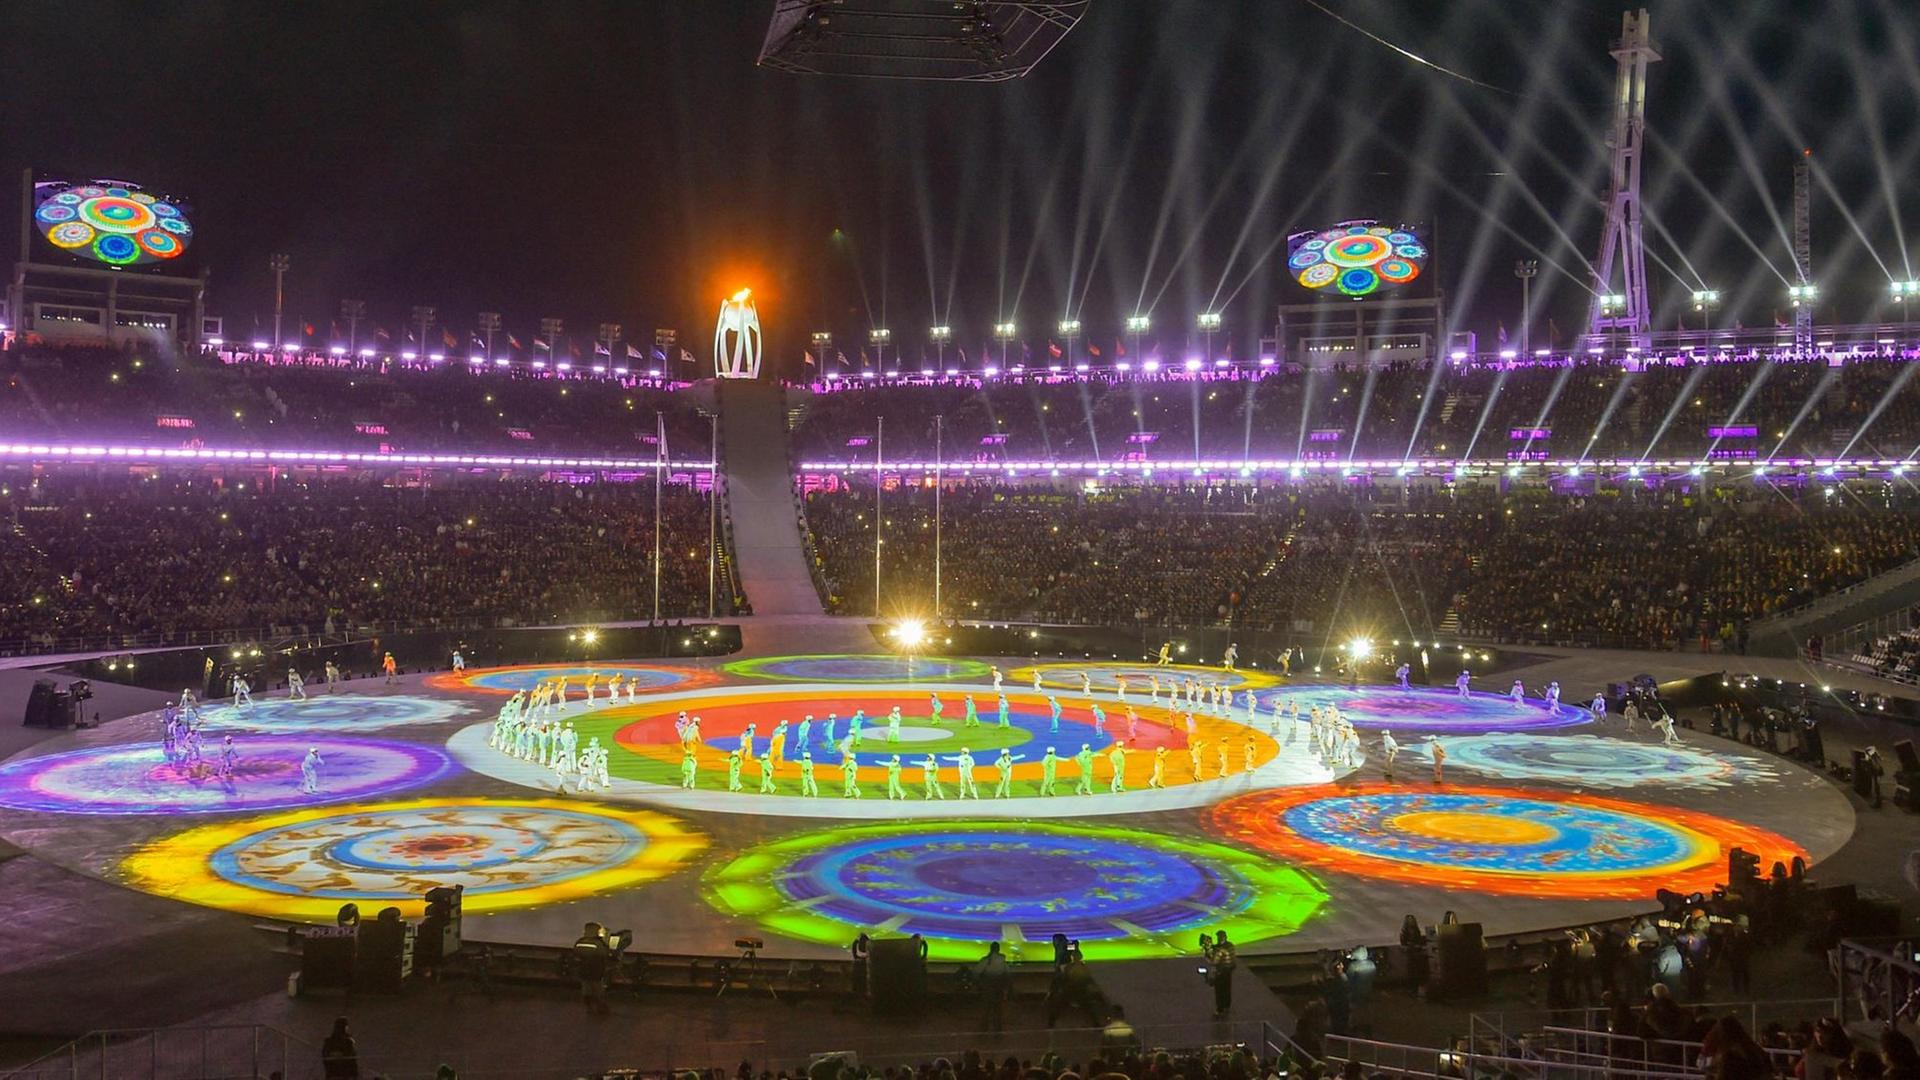 Bei der Schlussfeier im Olympiastadion von Pyeongchang präsentieren Tänzer und Künstler das Showprogramm. Zu sehen sind bunte, kreisförmige Lichtprojektionen.